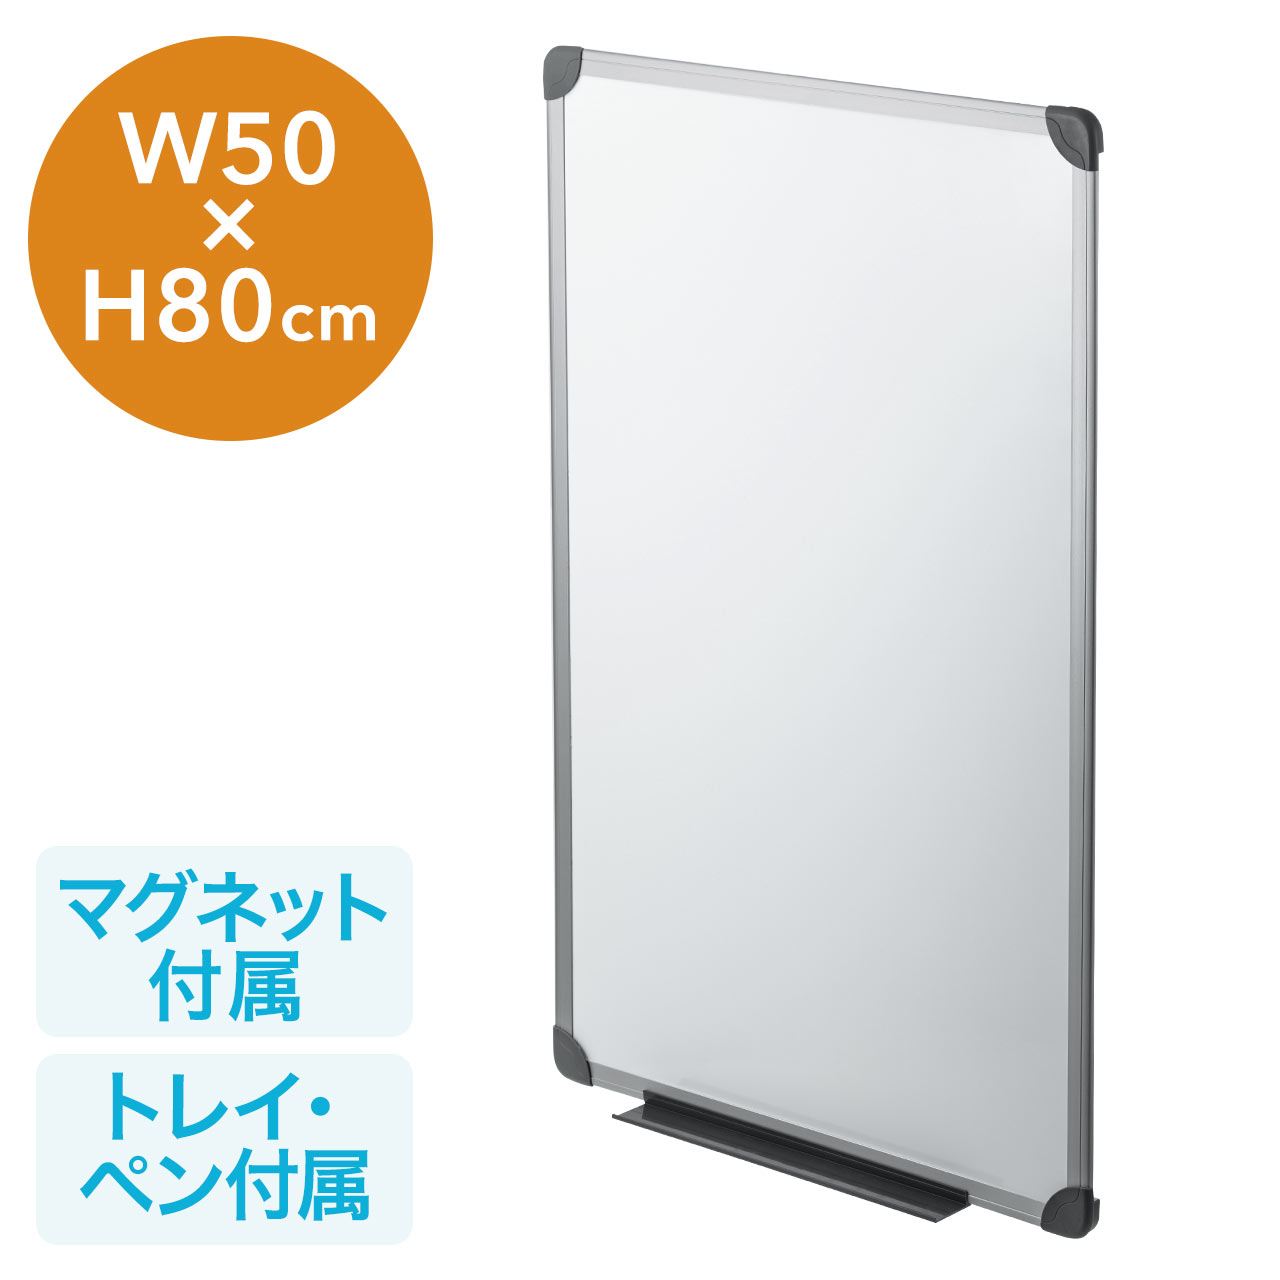 ホワイトボード 壁固定 コンパクトサイズ マグネット対応 ペン付属 50 80cm 100 Swb002の販売商品 通販ならサンワダイレクト